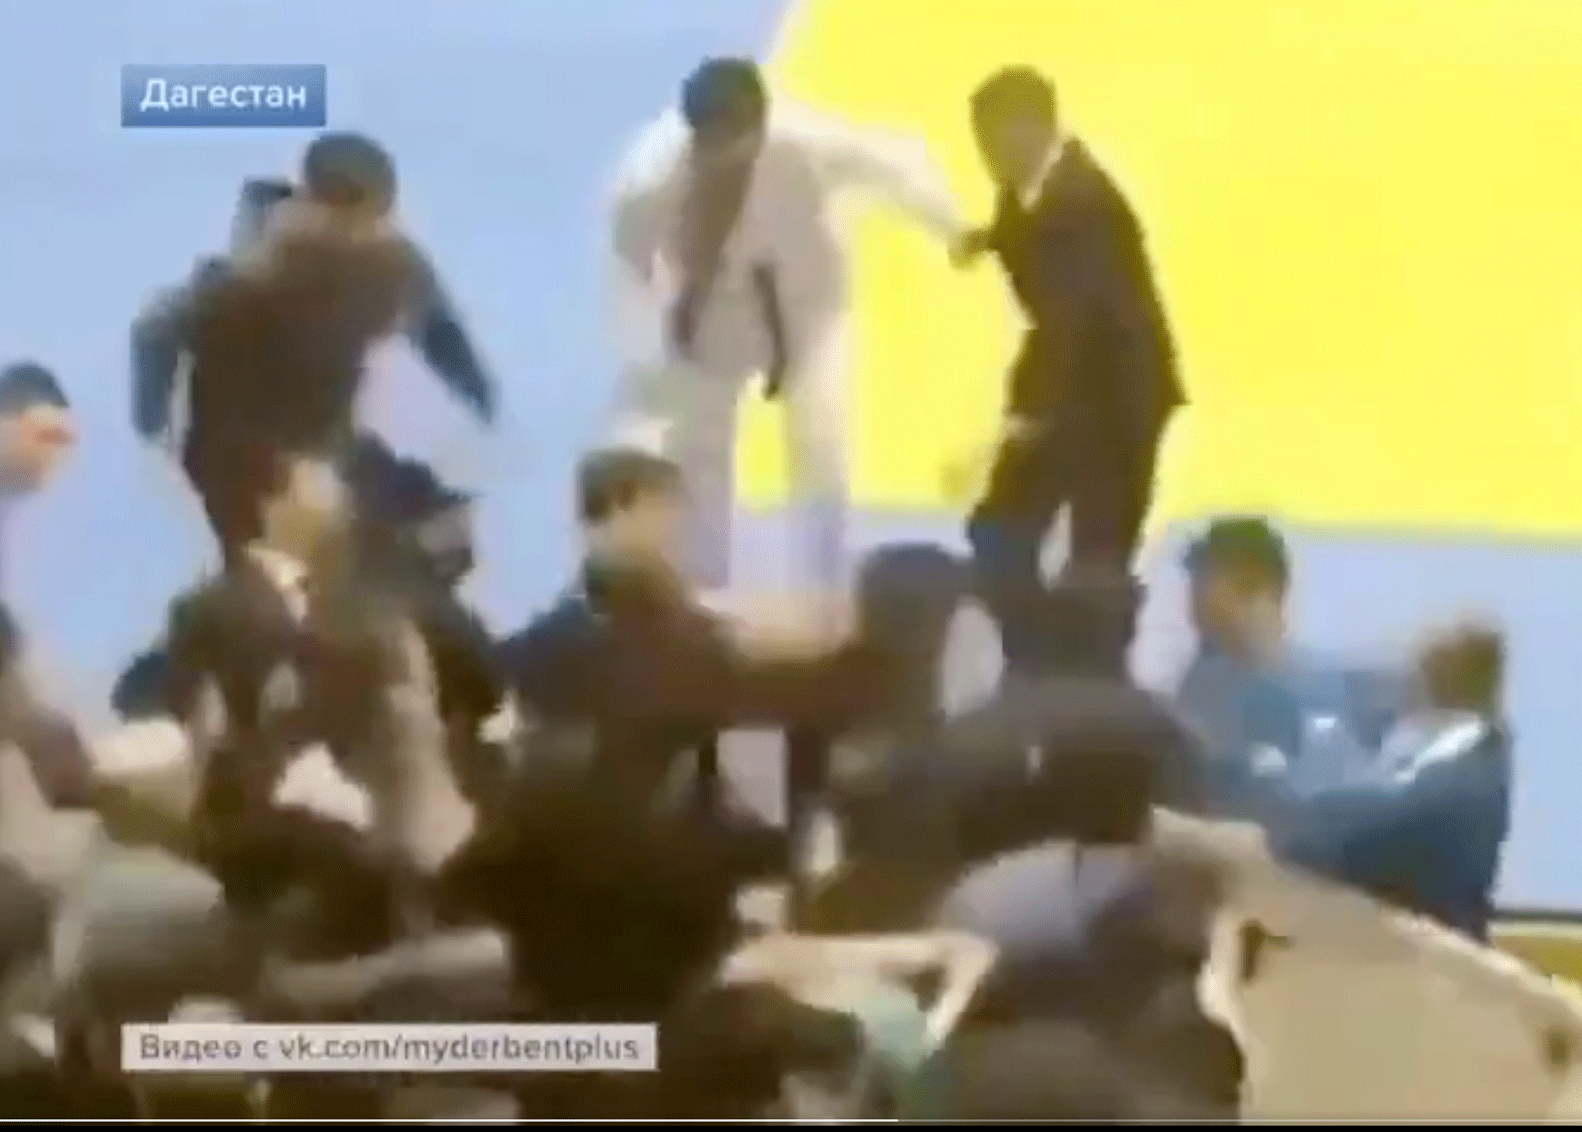 Giga knokpartij: Pleuris breekt uit bij judotoernooi (video)